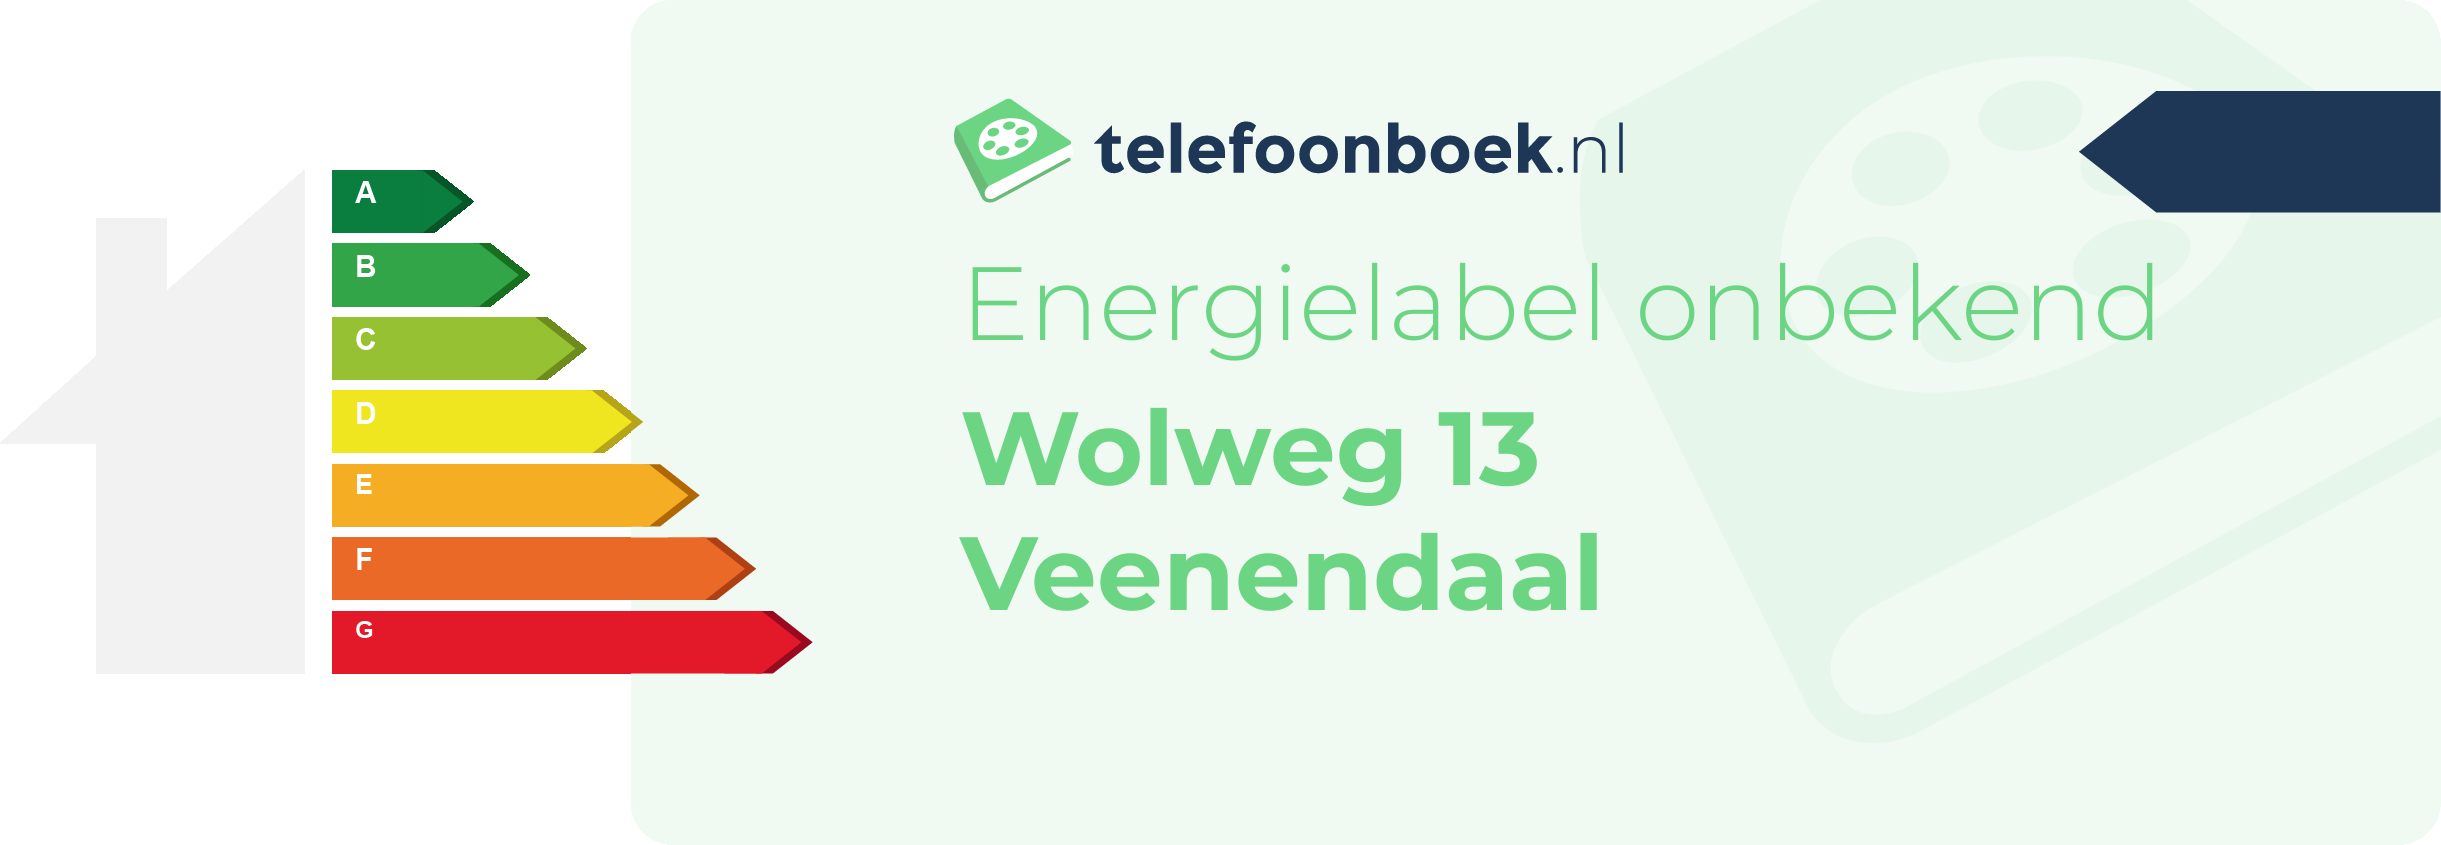 Energielabel Wolweg 13 Veenendaal